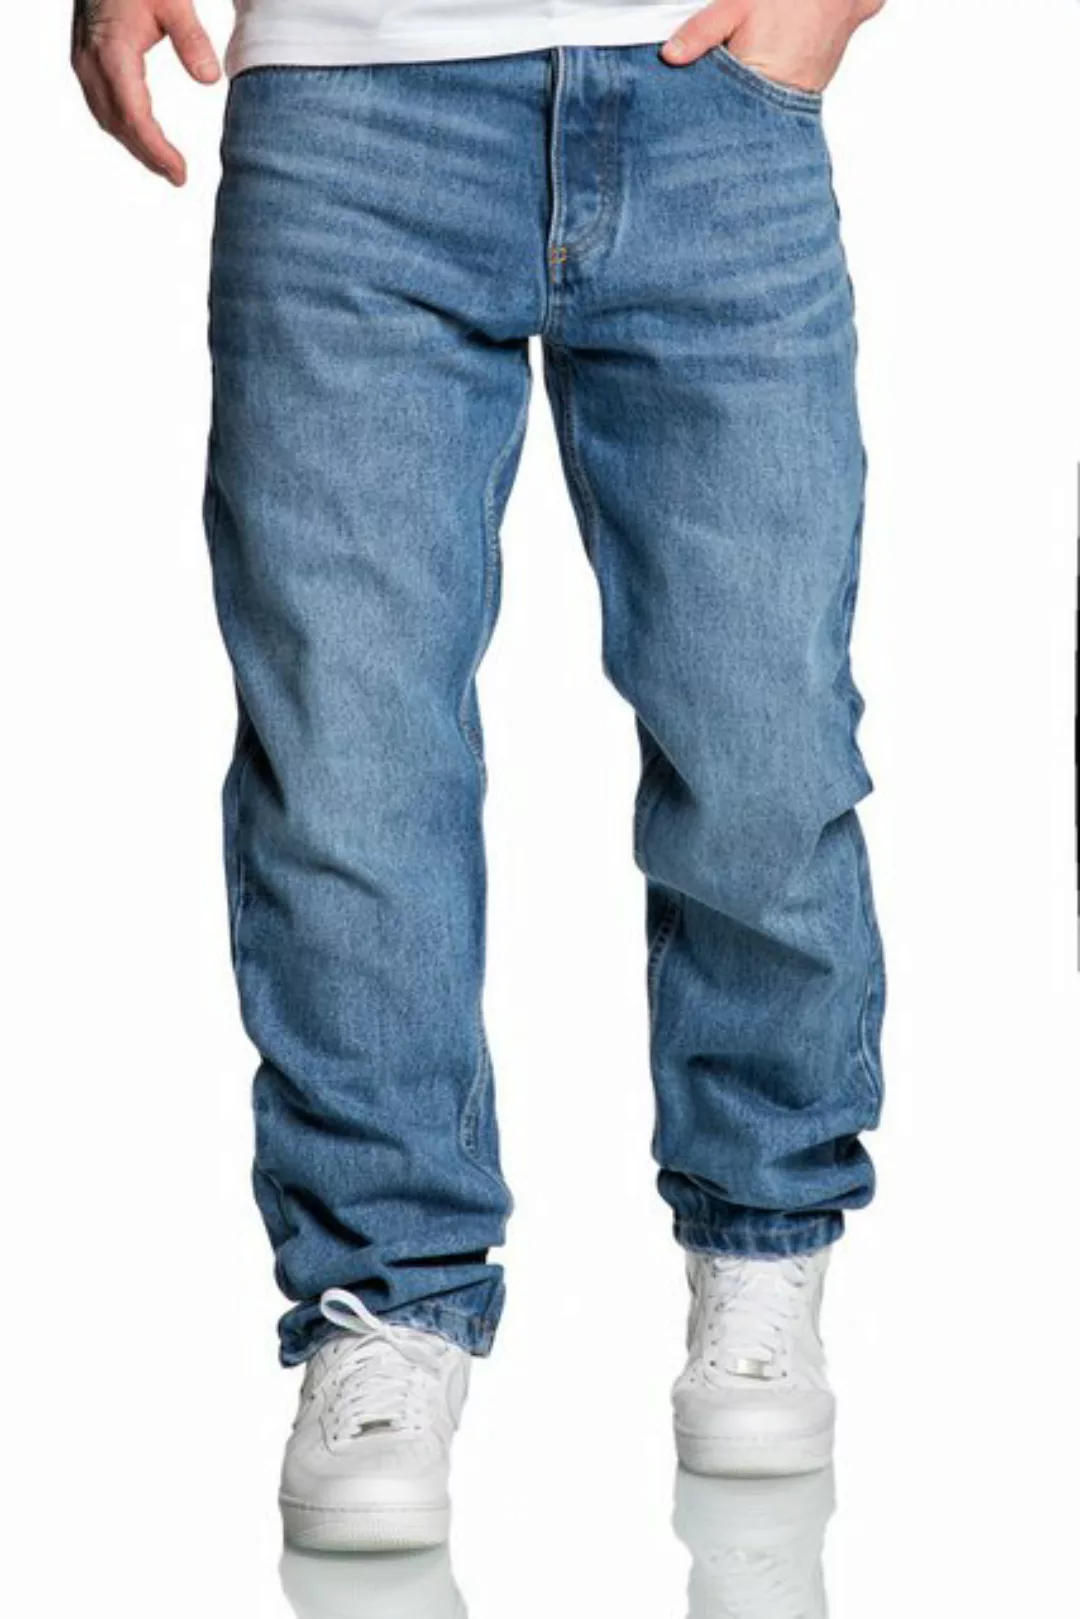 Amaci&Sons Weite Jeans BOX HILL 90s Baggy Jeans Herren 90s Denim Jeans Hose günstig online kaufen